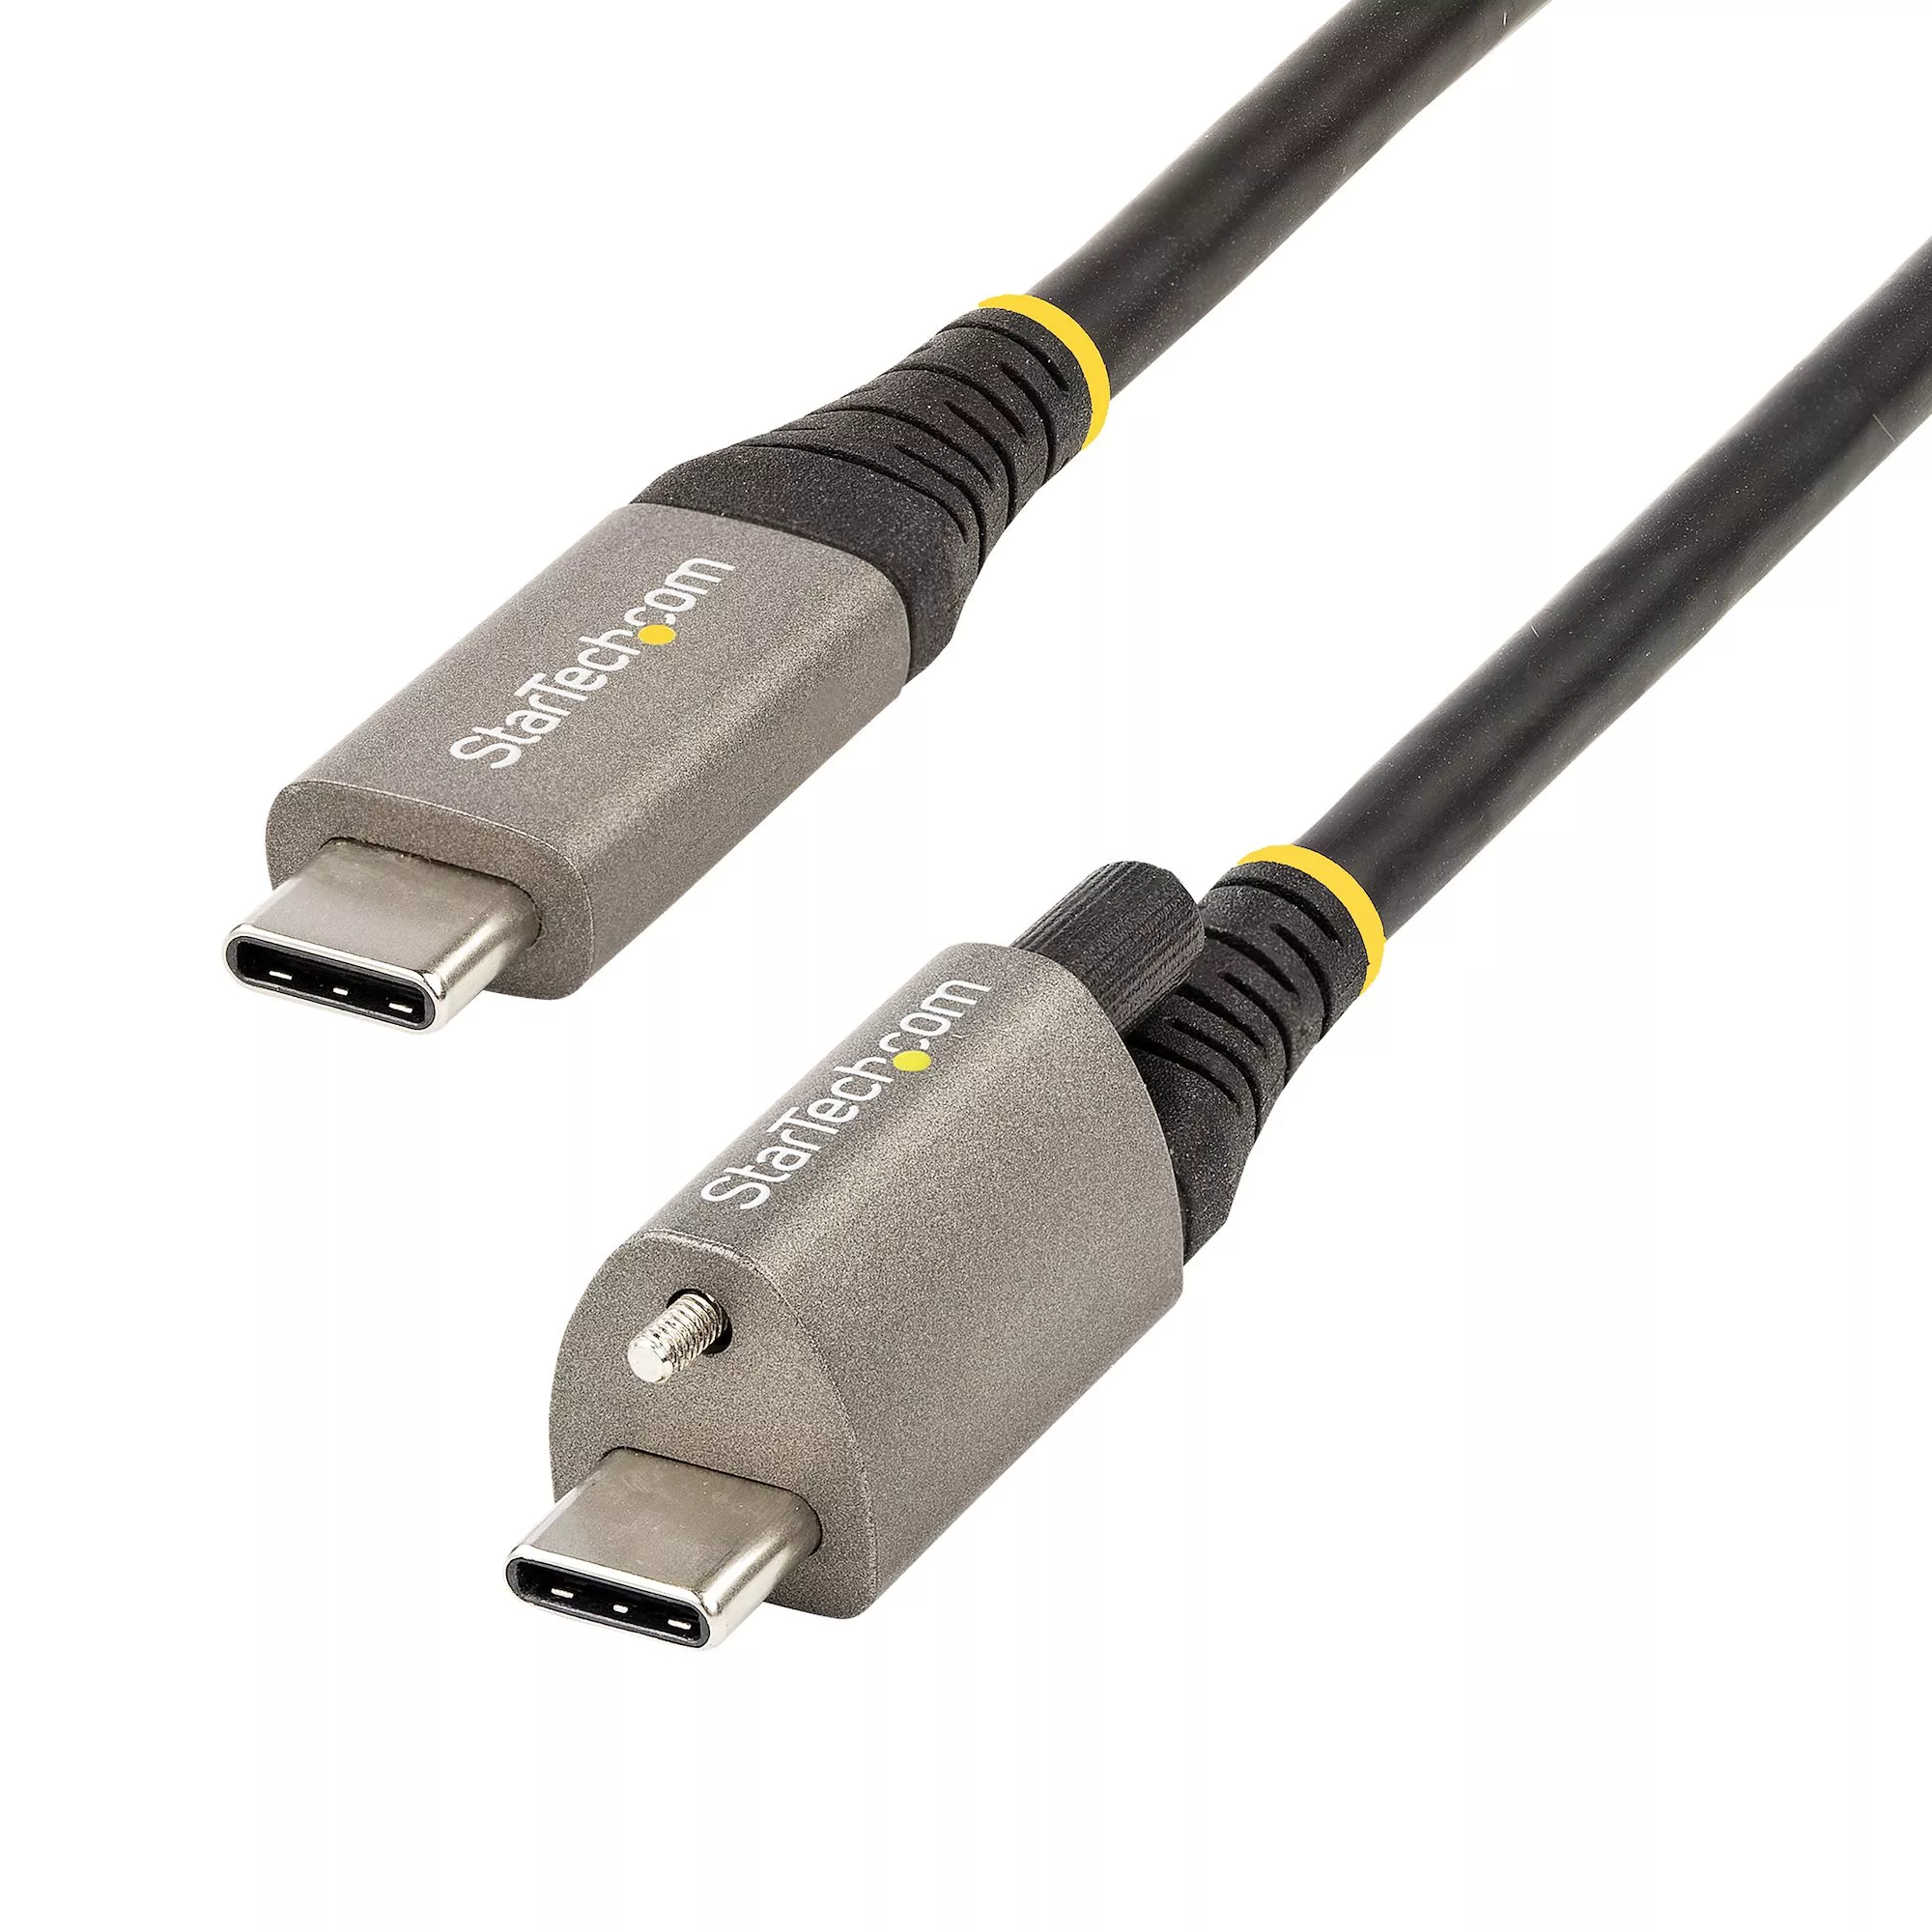 Revendeur officiel StarTech.com Câble USB C 10Gbps 1m à Verouillage par Vis